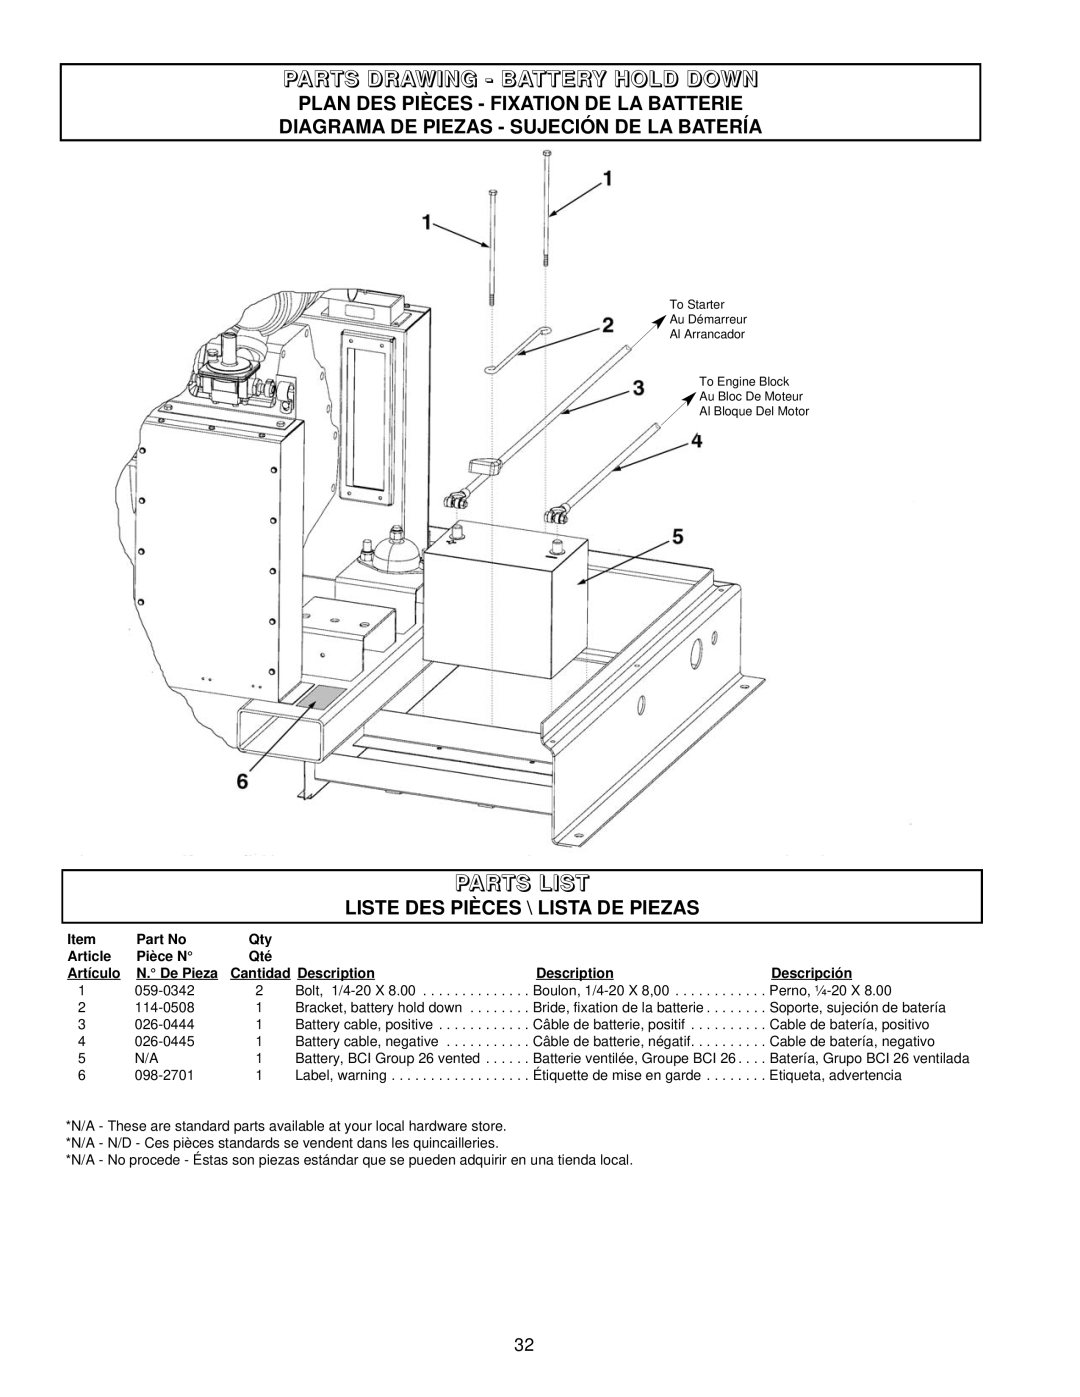 Coleman PM402511 Parts Drawing - Battery Hold Down, Parts List, Plan Des Pièces - Fixation De La Batterie, Article 